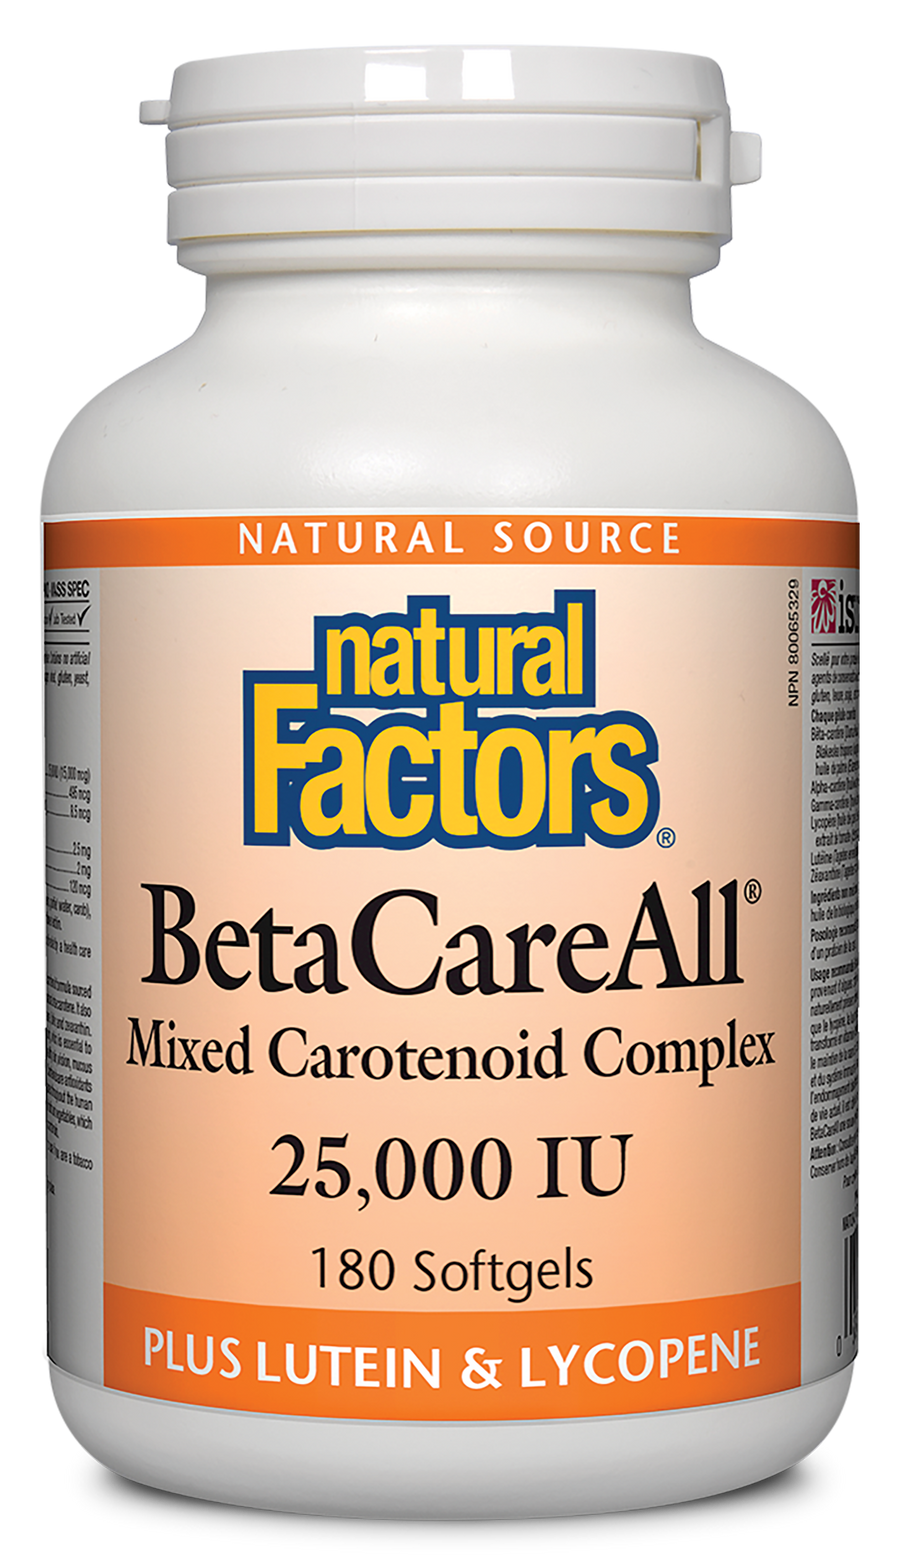 Natural Factors BetaCareAll 25,000 IU Softgels